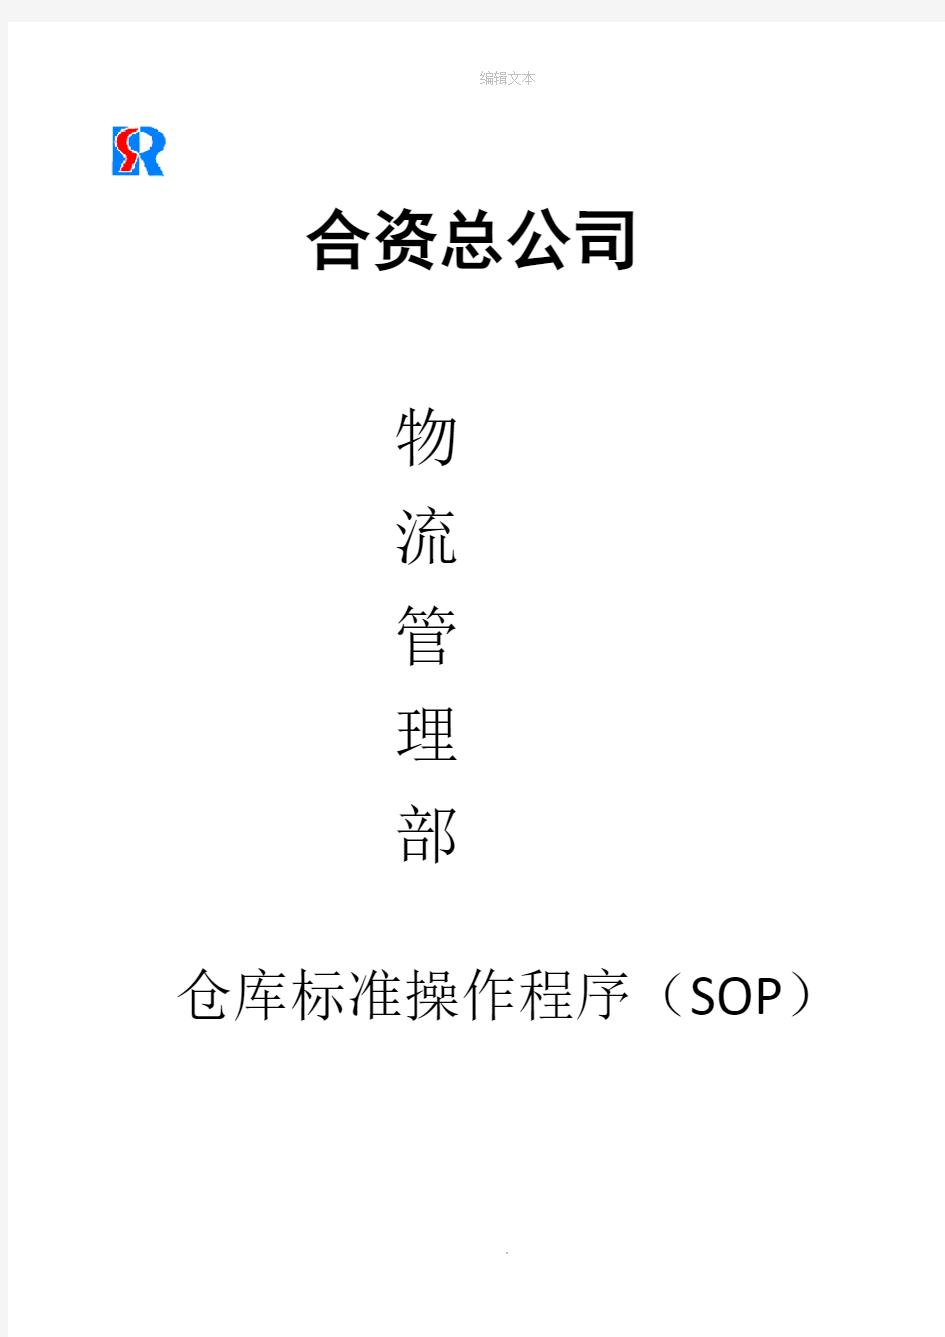 仓库标准操作程序(SOP)